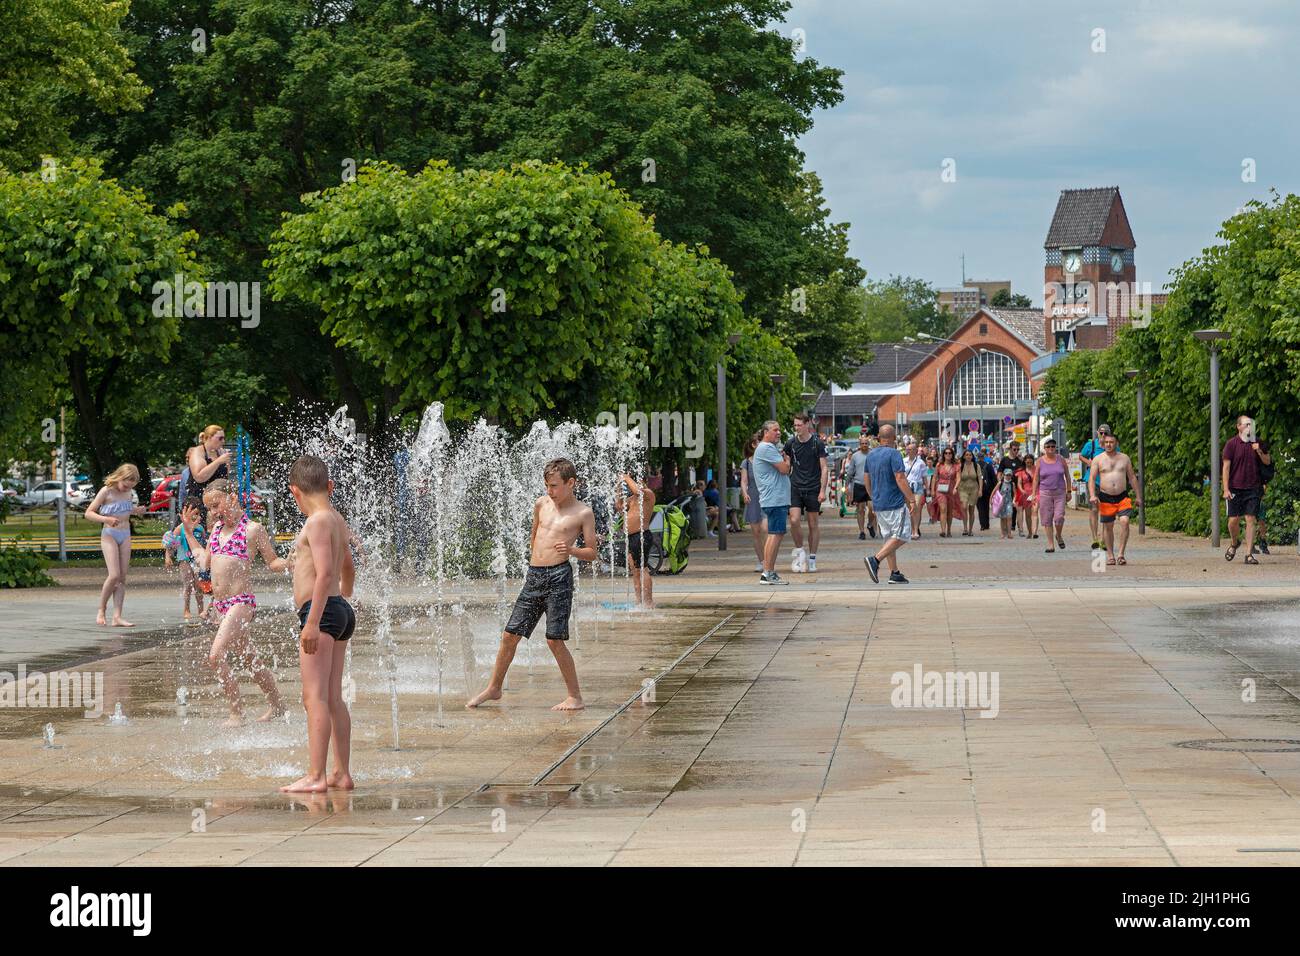 People, children, water game, train station, Travemünde, Lübeck, Schleswig-Holstein, Germany Stock Photo